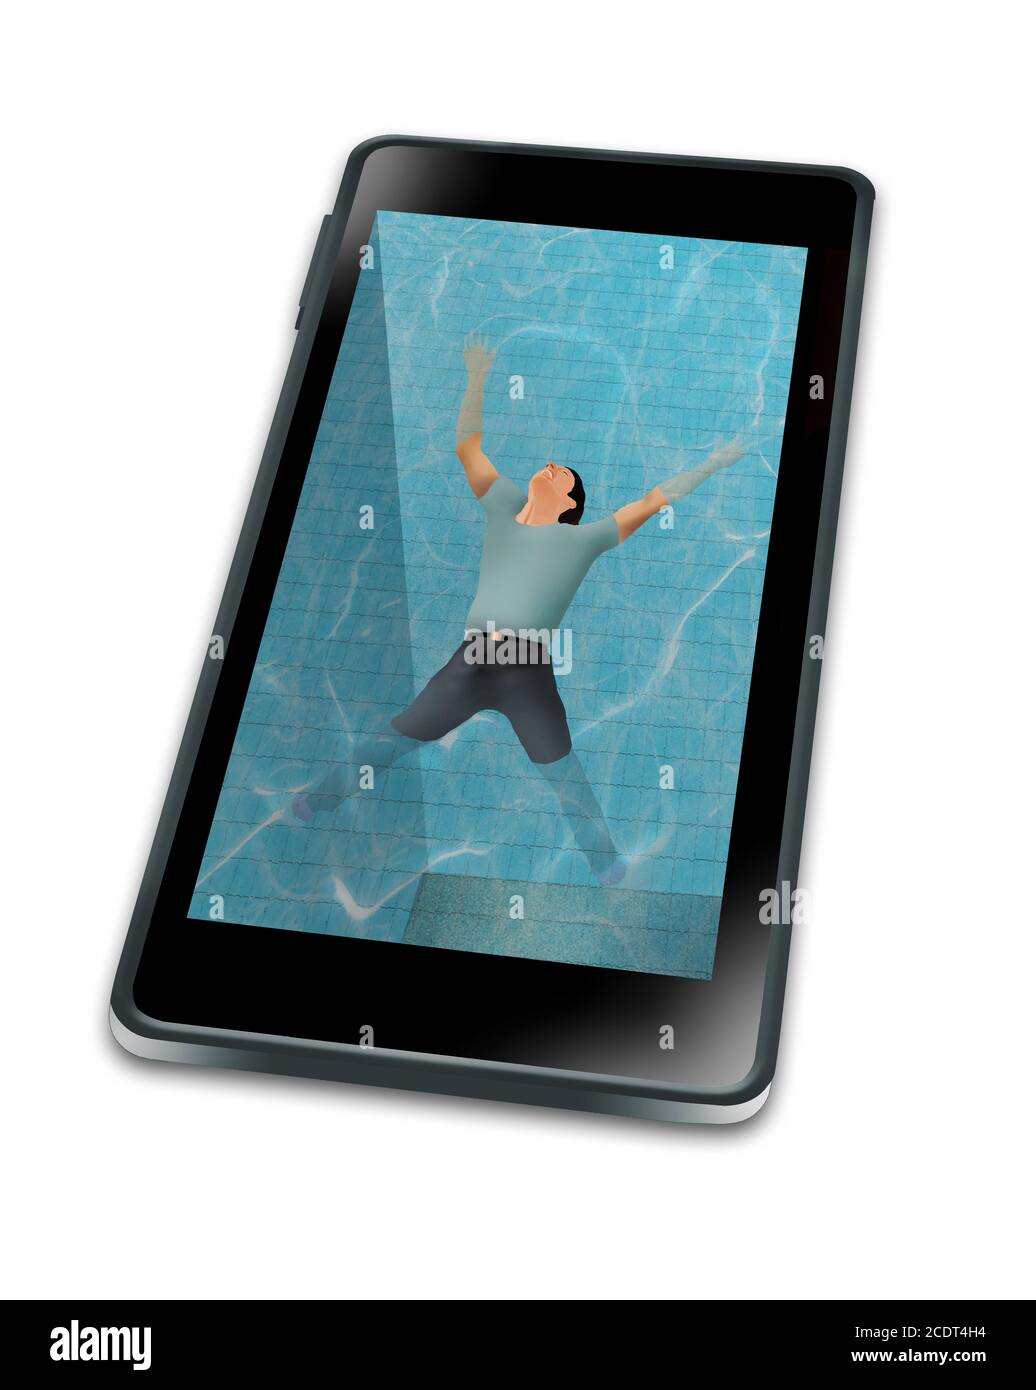 Man sieht einen Mann auf einem mit Wasser gefüllten Handy schweben, als wäre es ein Schwimmbad. Es zeigt, in sein Handy eingetaucht. Stockfoto